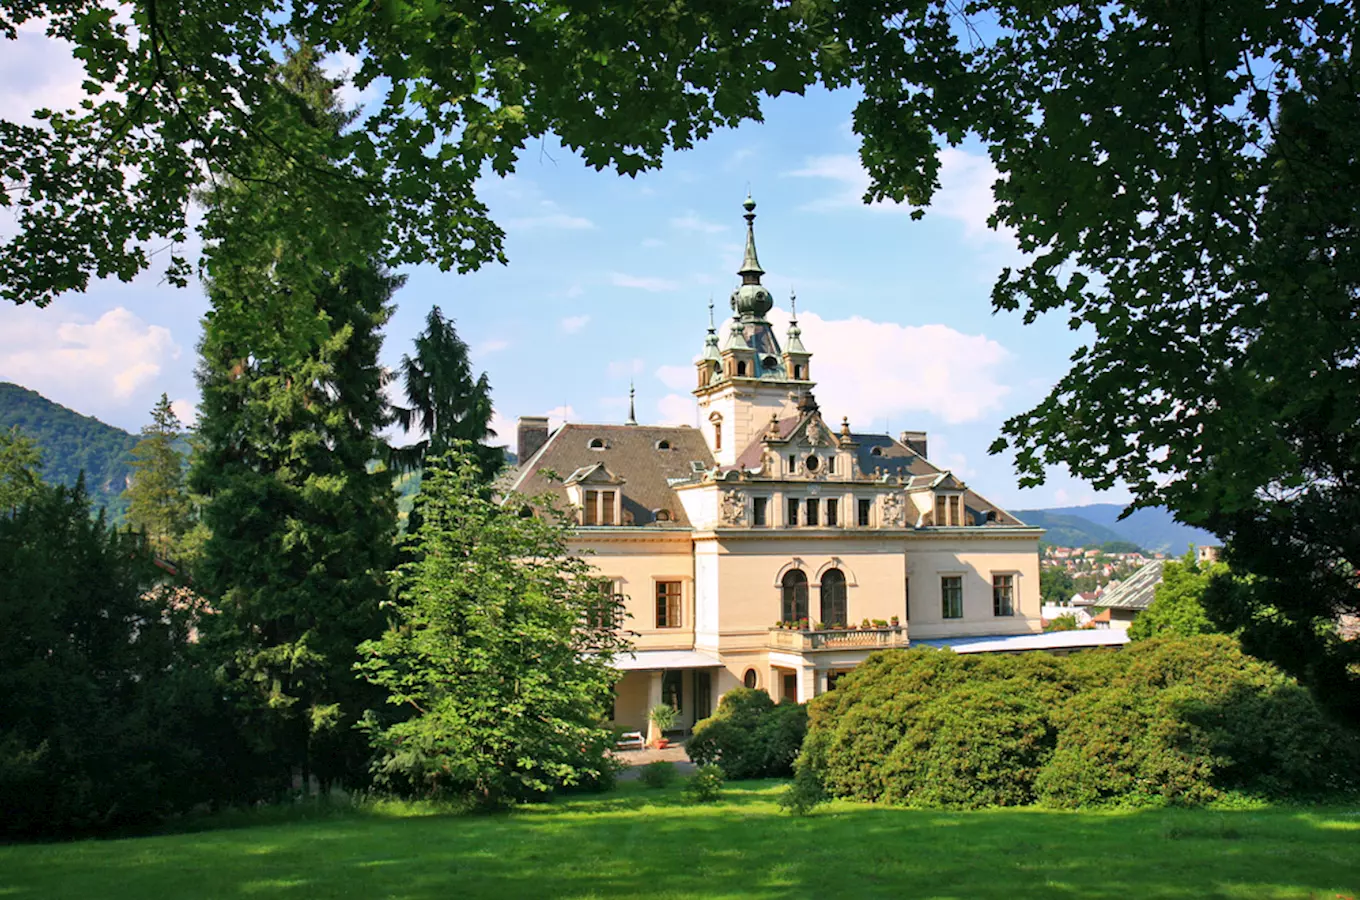 Prázdninový program plný pohádek nabízí zámek Velké Březno